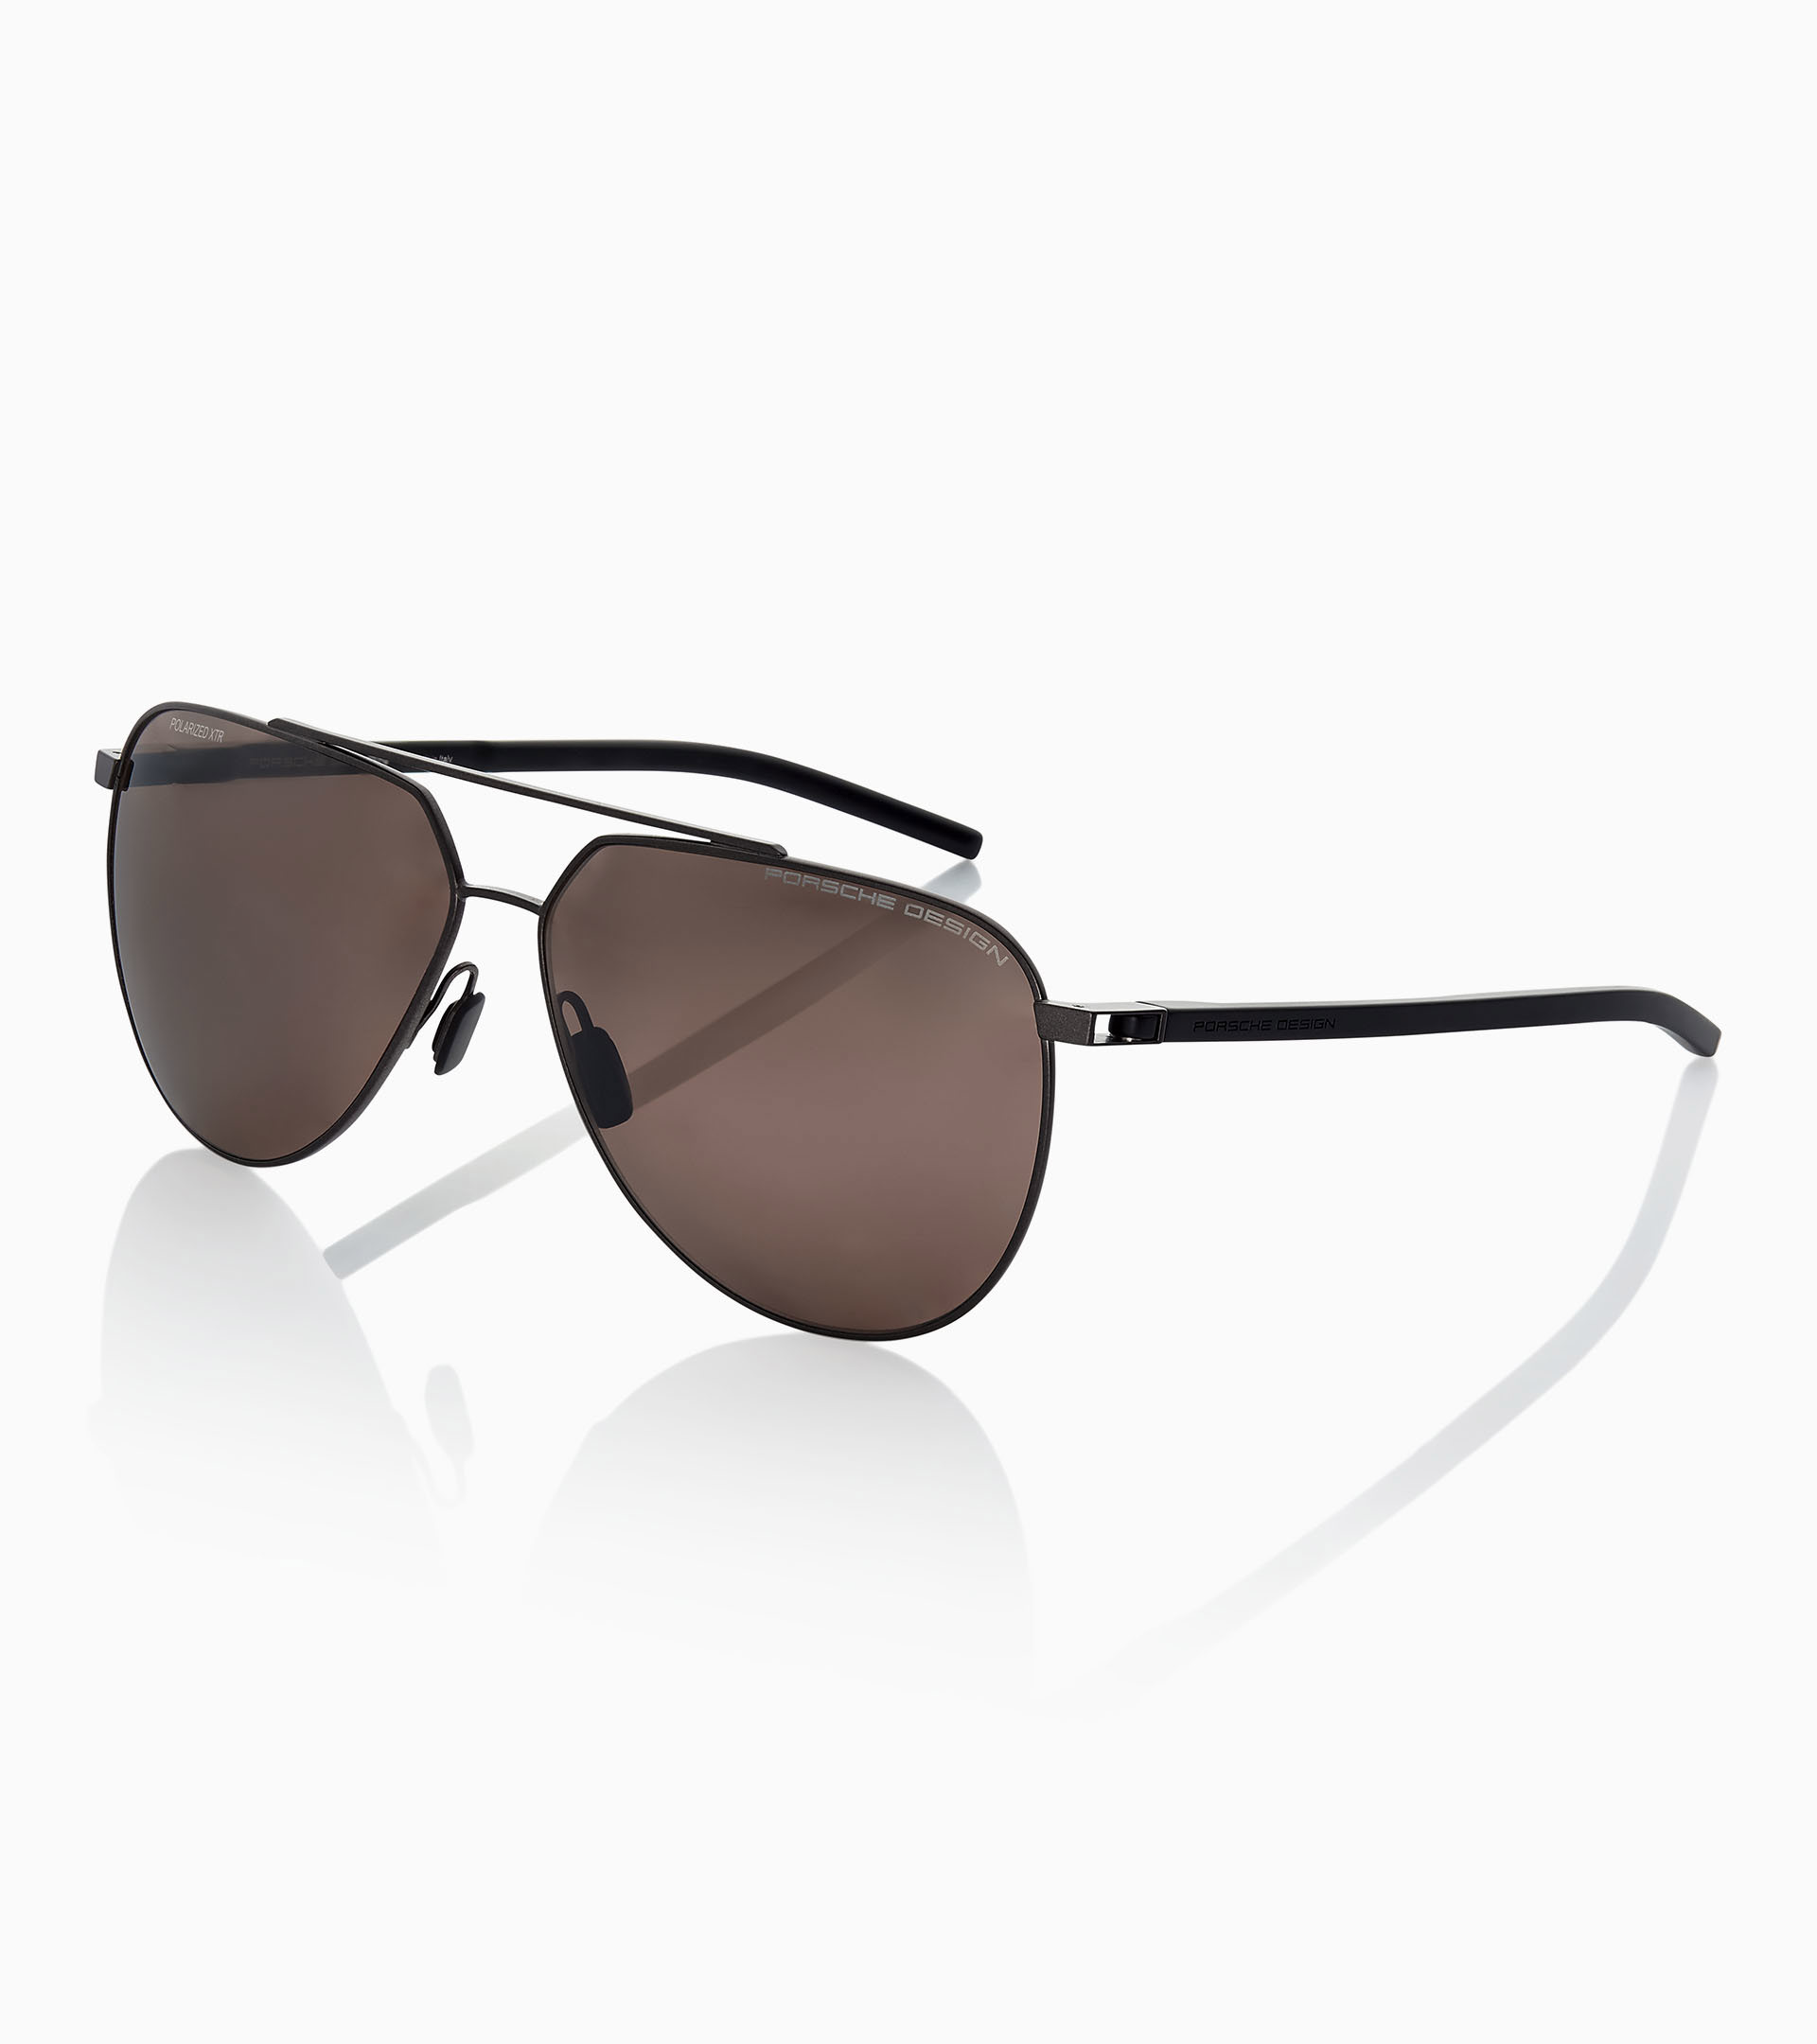 Sunglasses P´8696 - Square Sunglasses for Men, Porsche Design